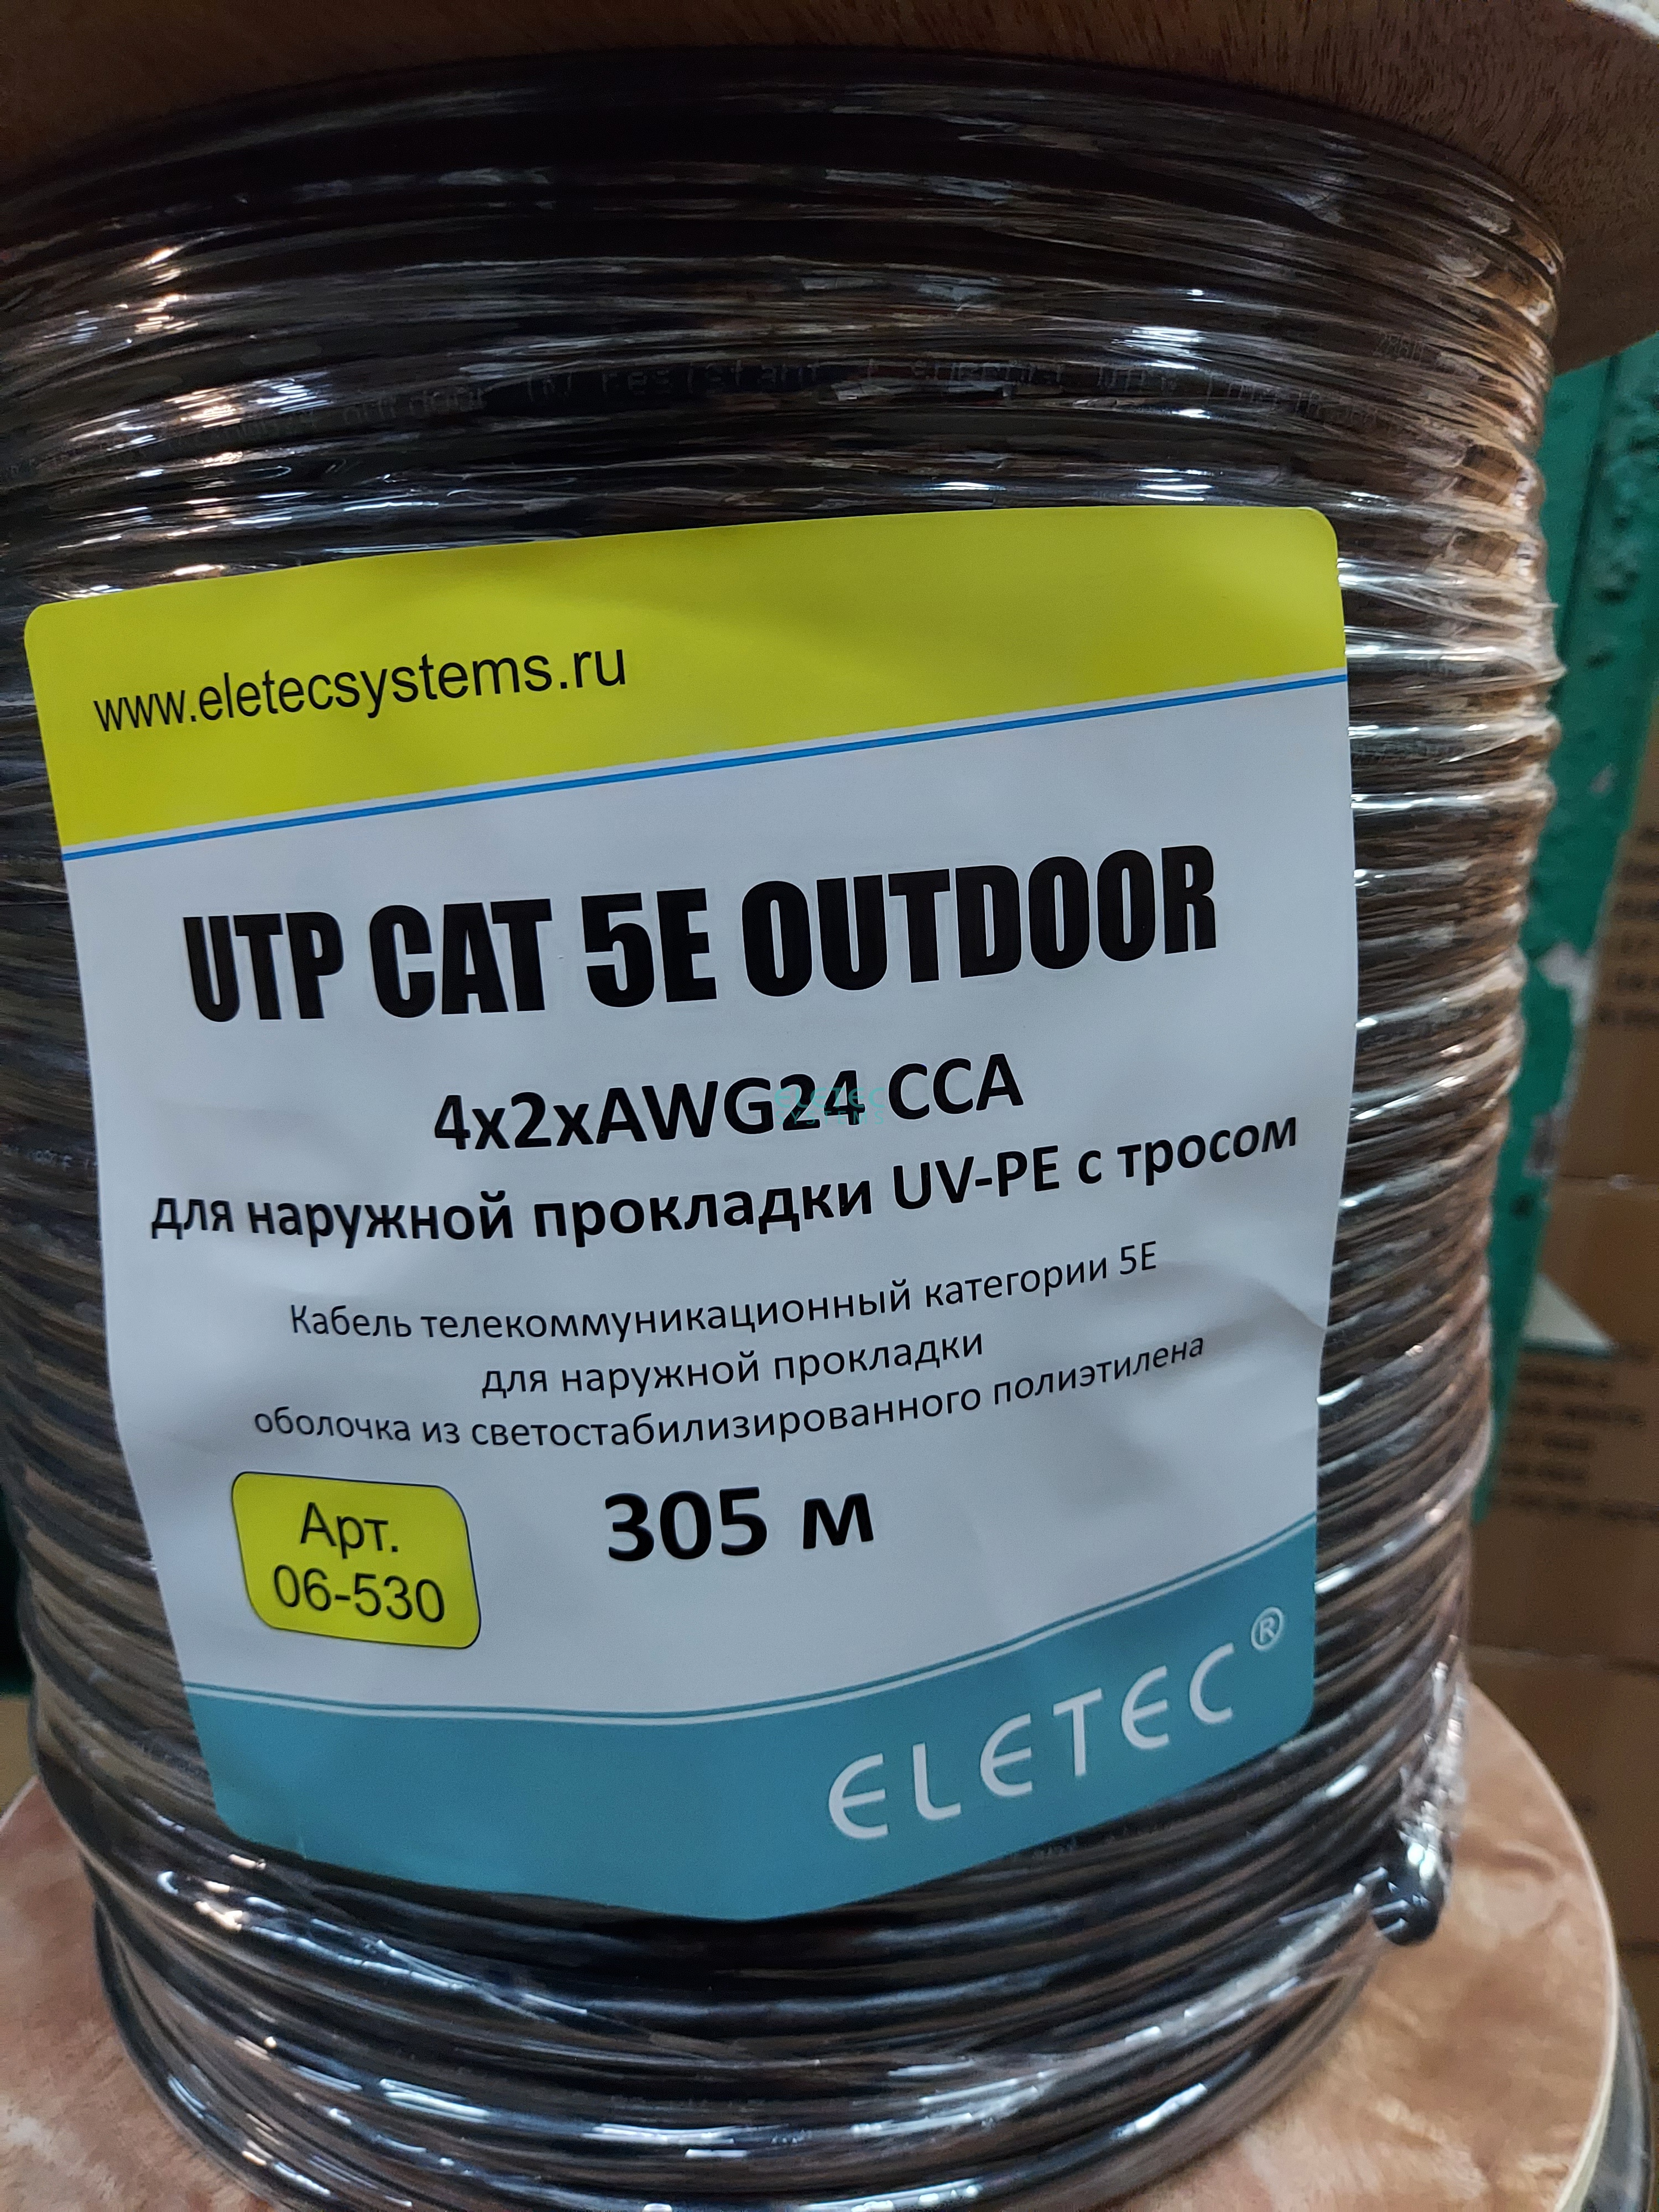 картинка Кабель UTP 5E Eletec 4x2xAWG24, наружный с тросом ,305м, CCA (медь 30%) Eletec Systems